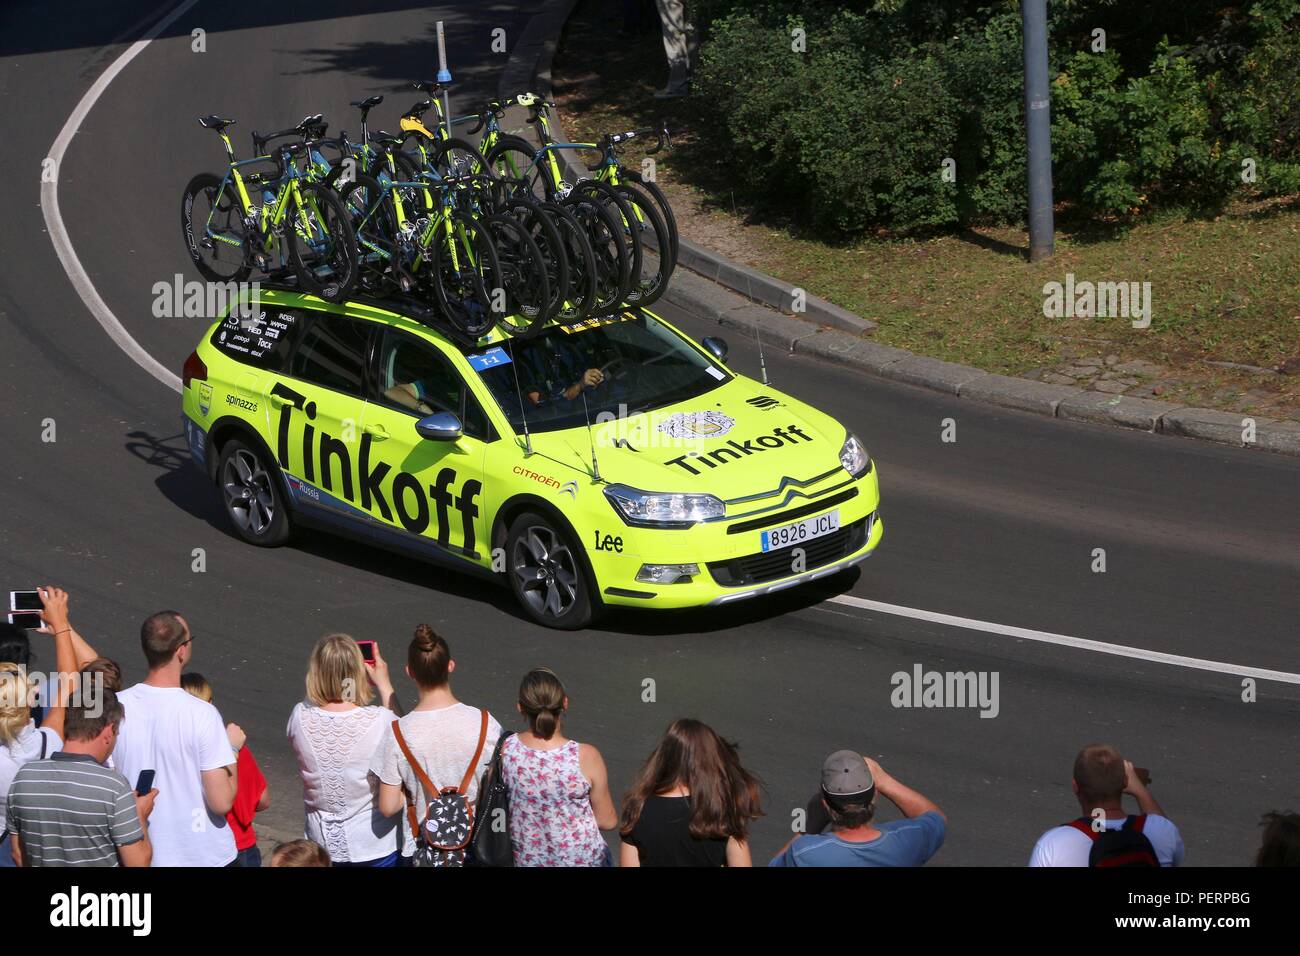 Szczecin, Pologne - 13 juillet 2016 : les lecteurs de véhicule de l'équipe course cycliste Tour de Pologne en Pologne. Citroen C5 de l'équipe Tinkoff à partir de la Russie. Banque D'Images